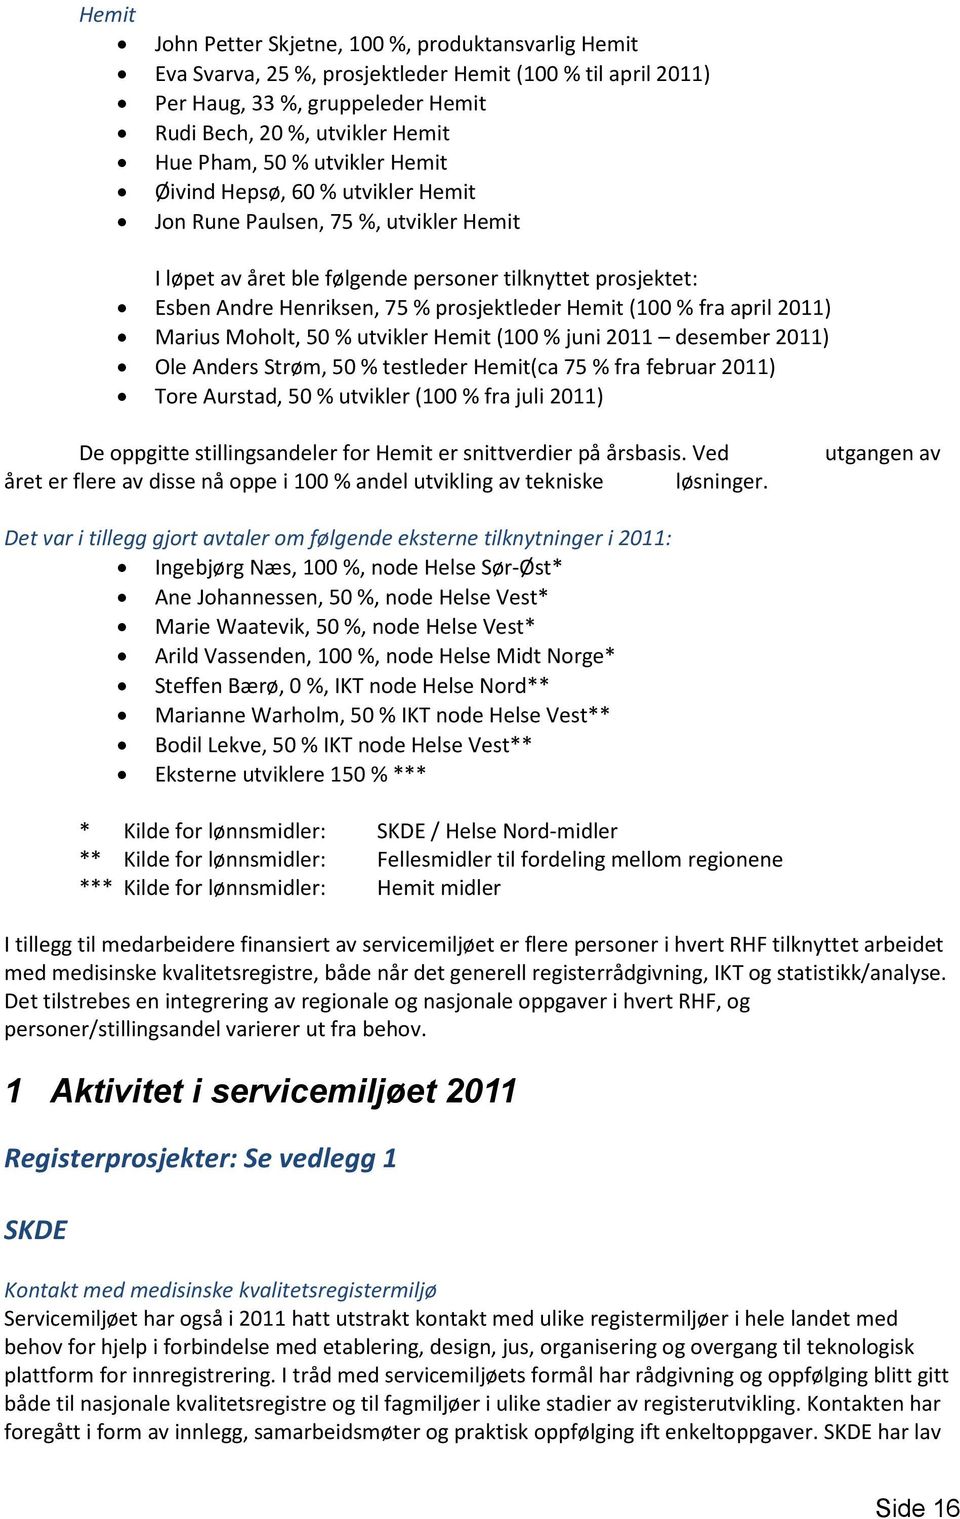 (100 % fra april 2011) Marius Moholt, 50 % utvikler Hemit (100 % juni 2011 desember 2011) Ole Anders Strøm, 50 % testleder Hemit(ca 75 % fra februar 2011) Tore Aurstad, 50 % utvikler (100 % fra juli